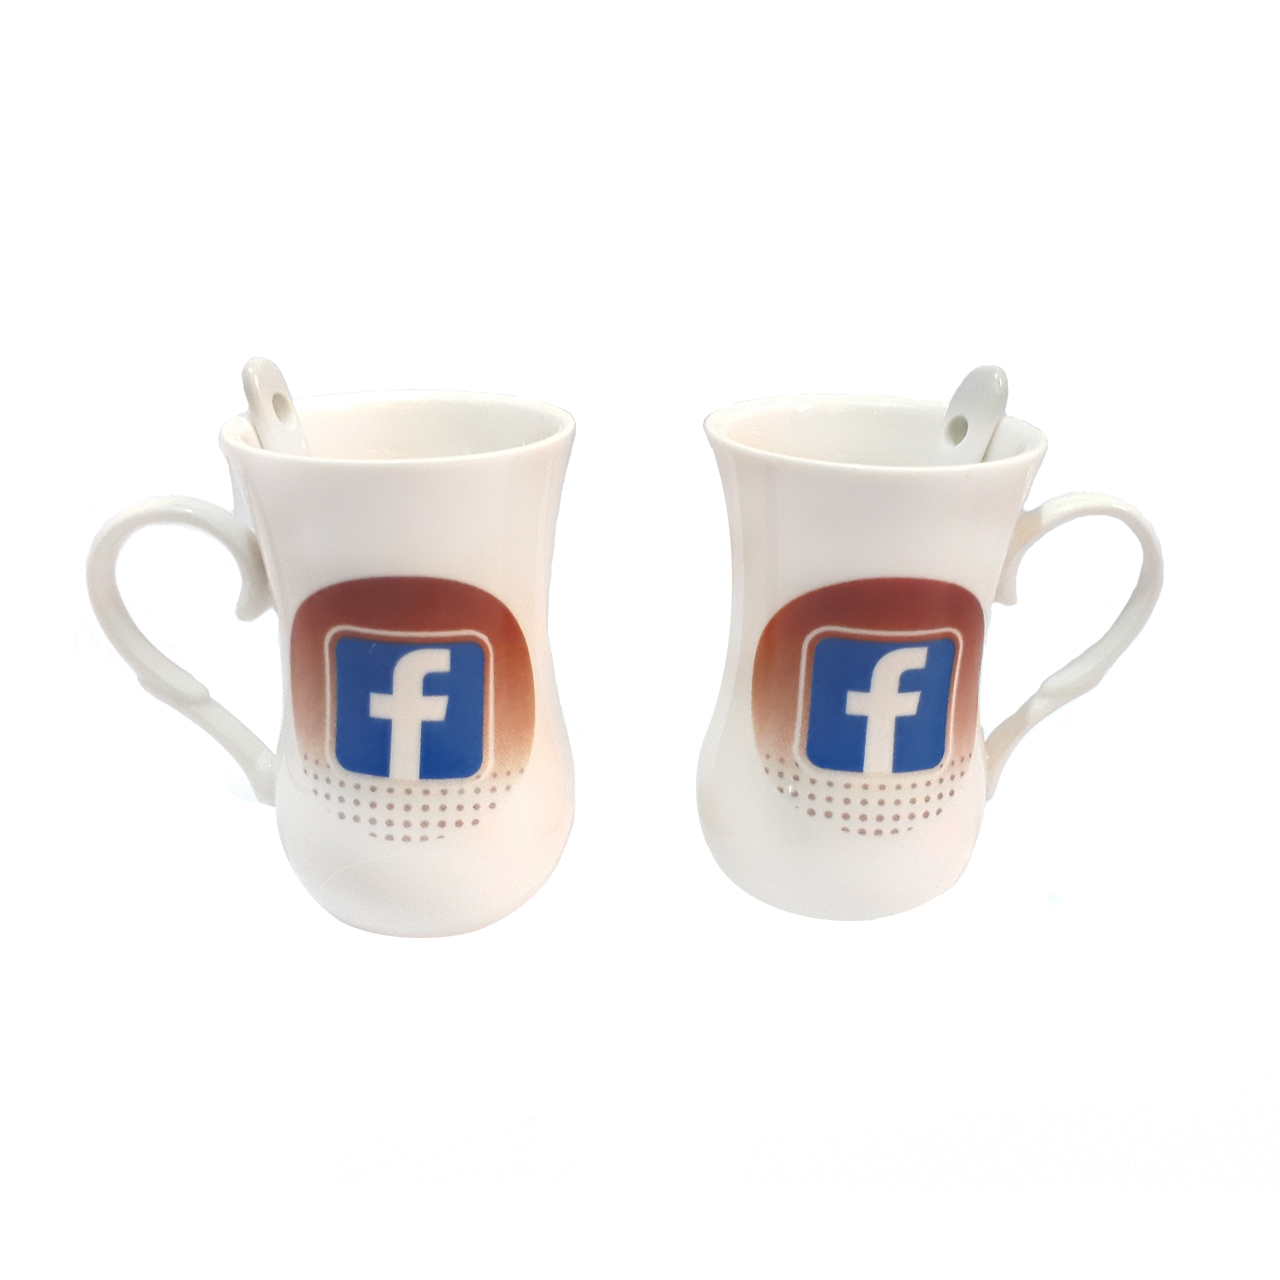 سرویس چای خوری 2 پارچه طرح فیس بوک